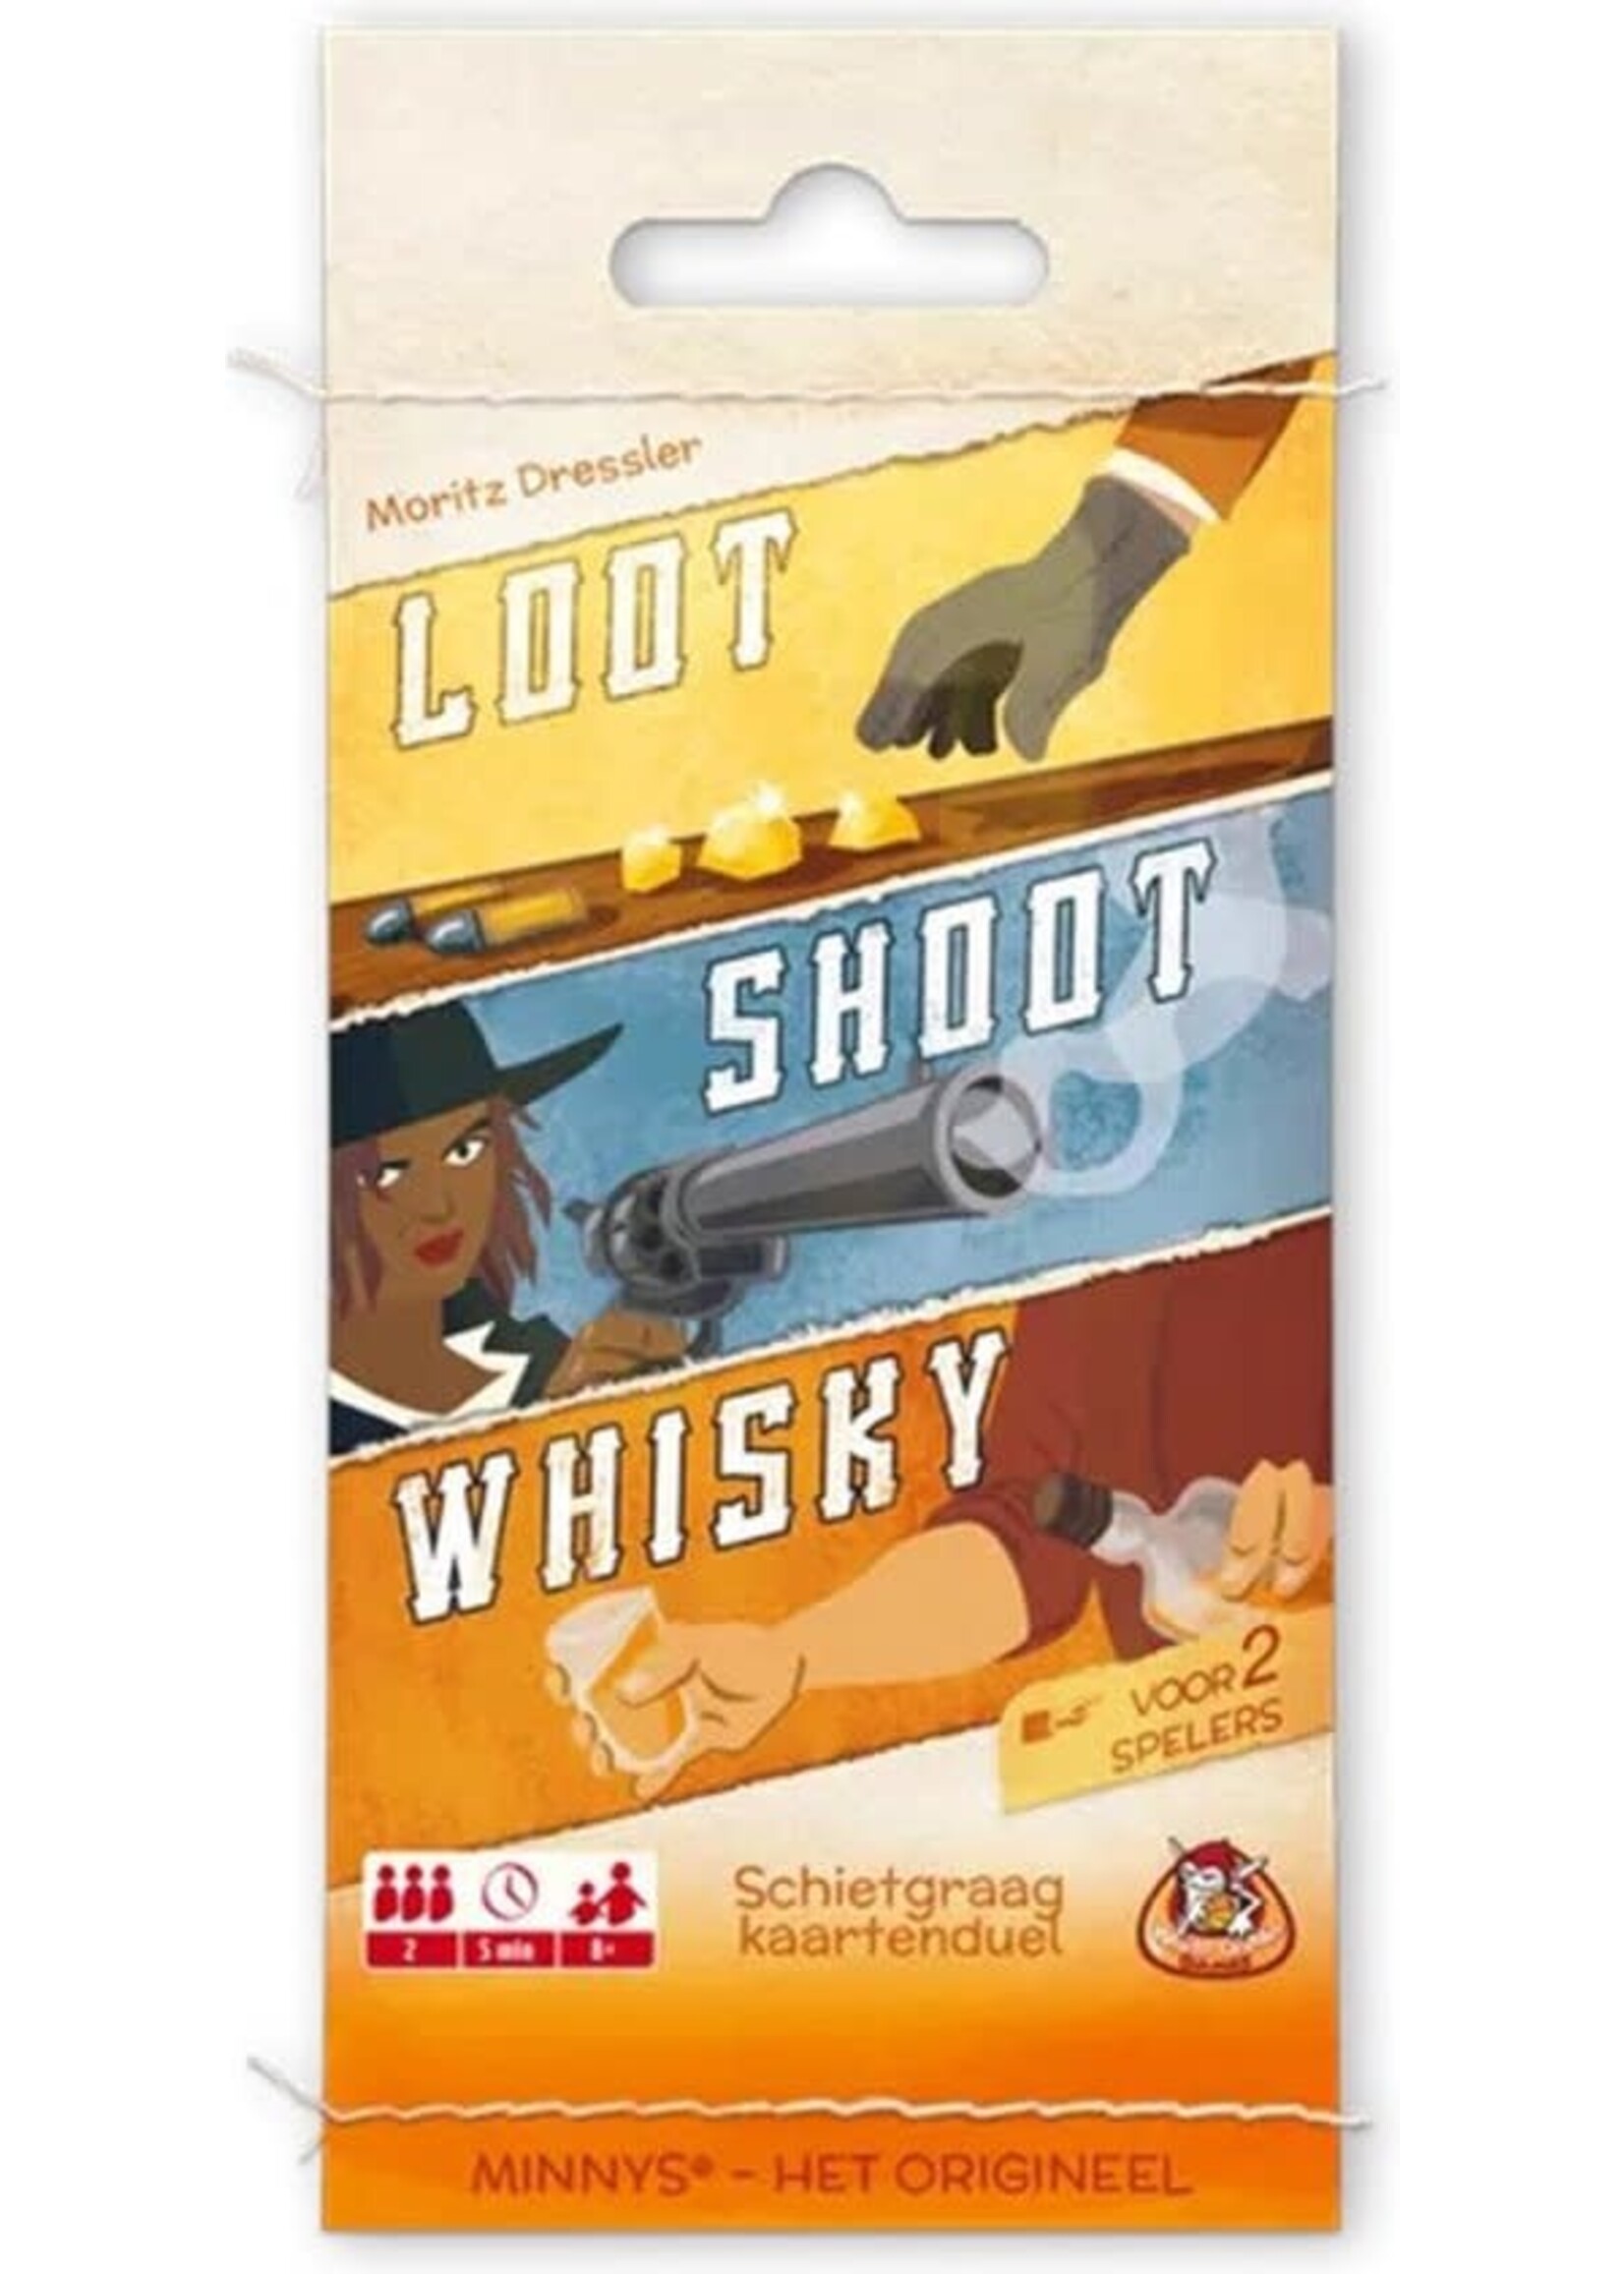 White Goblin Reisspel Minnys: Loot, Shoot, Whiskey